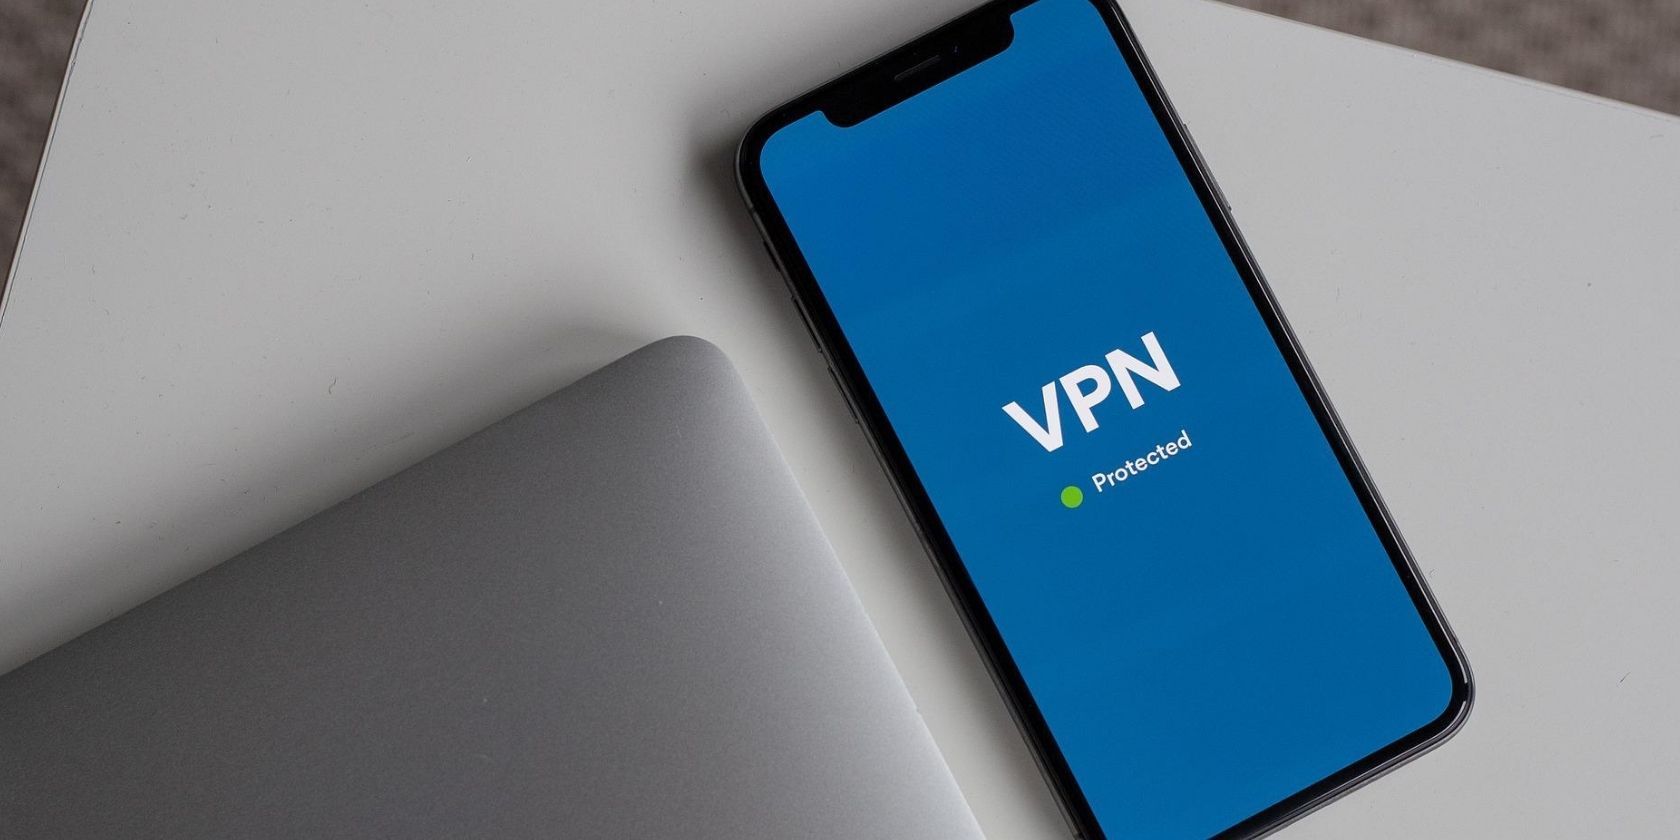 vpn app active on smartphone